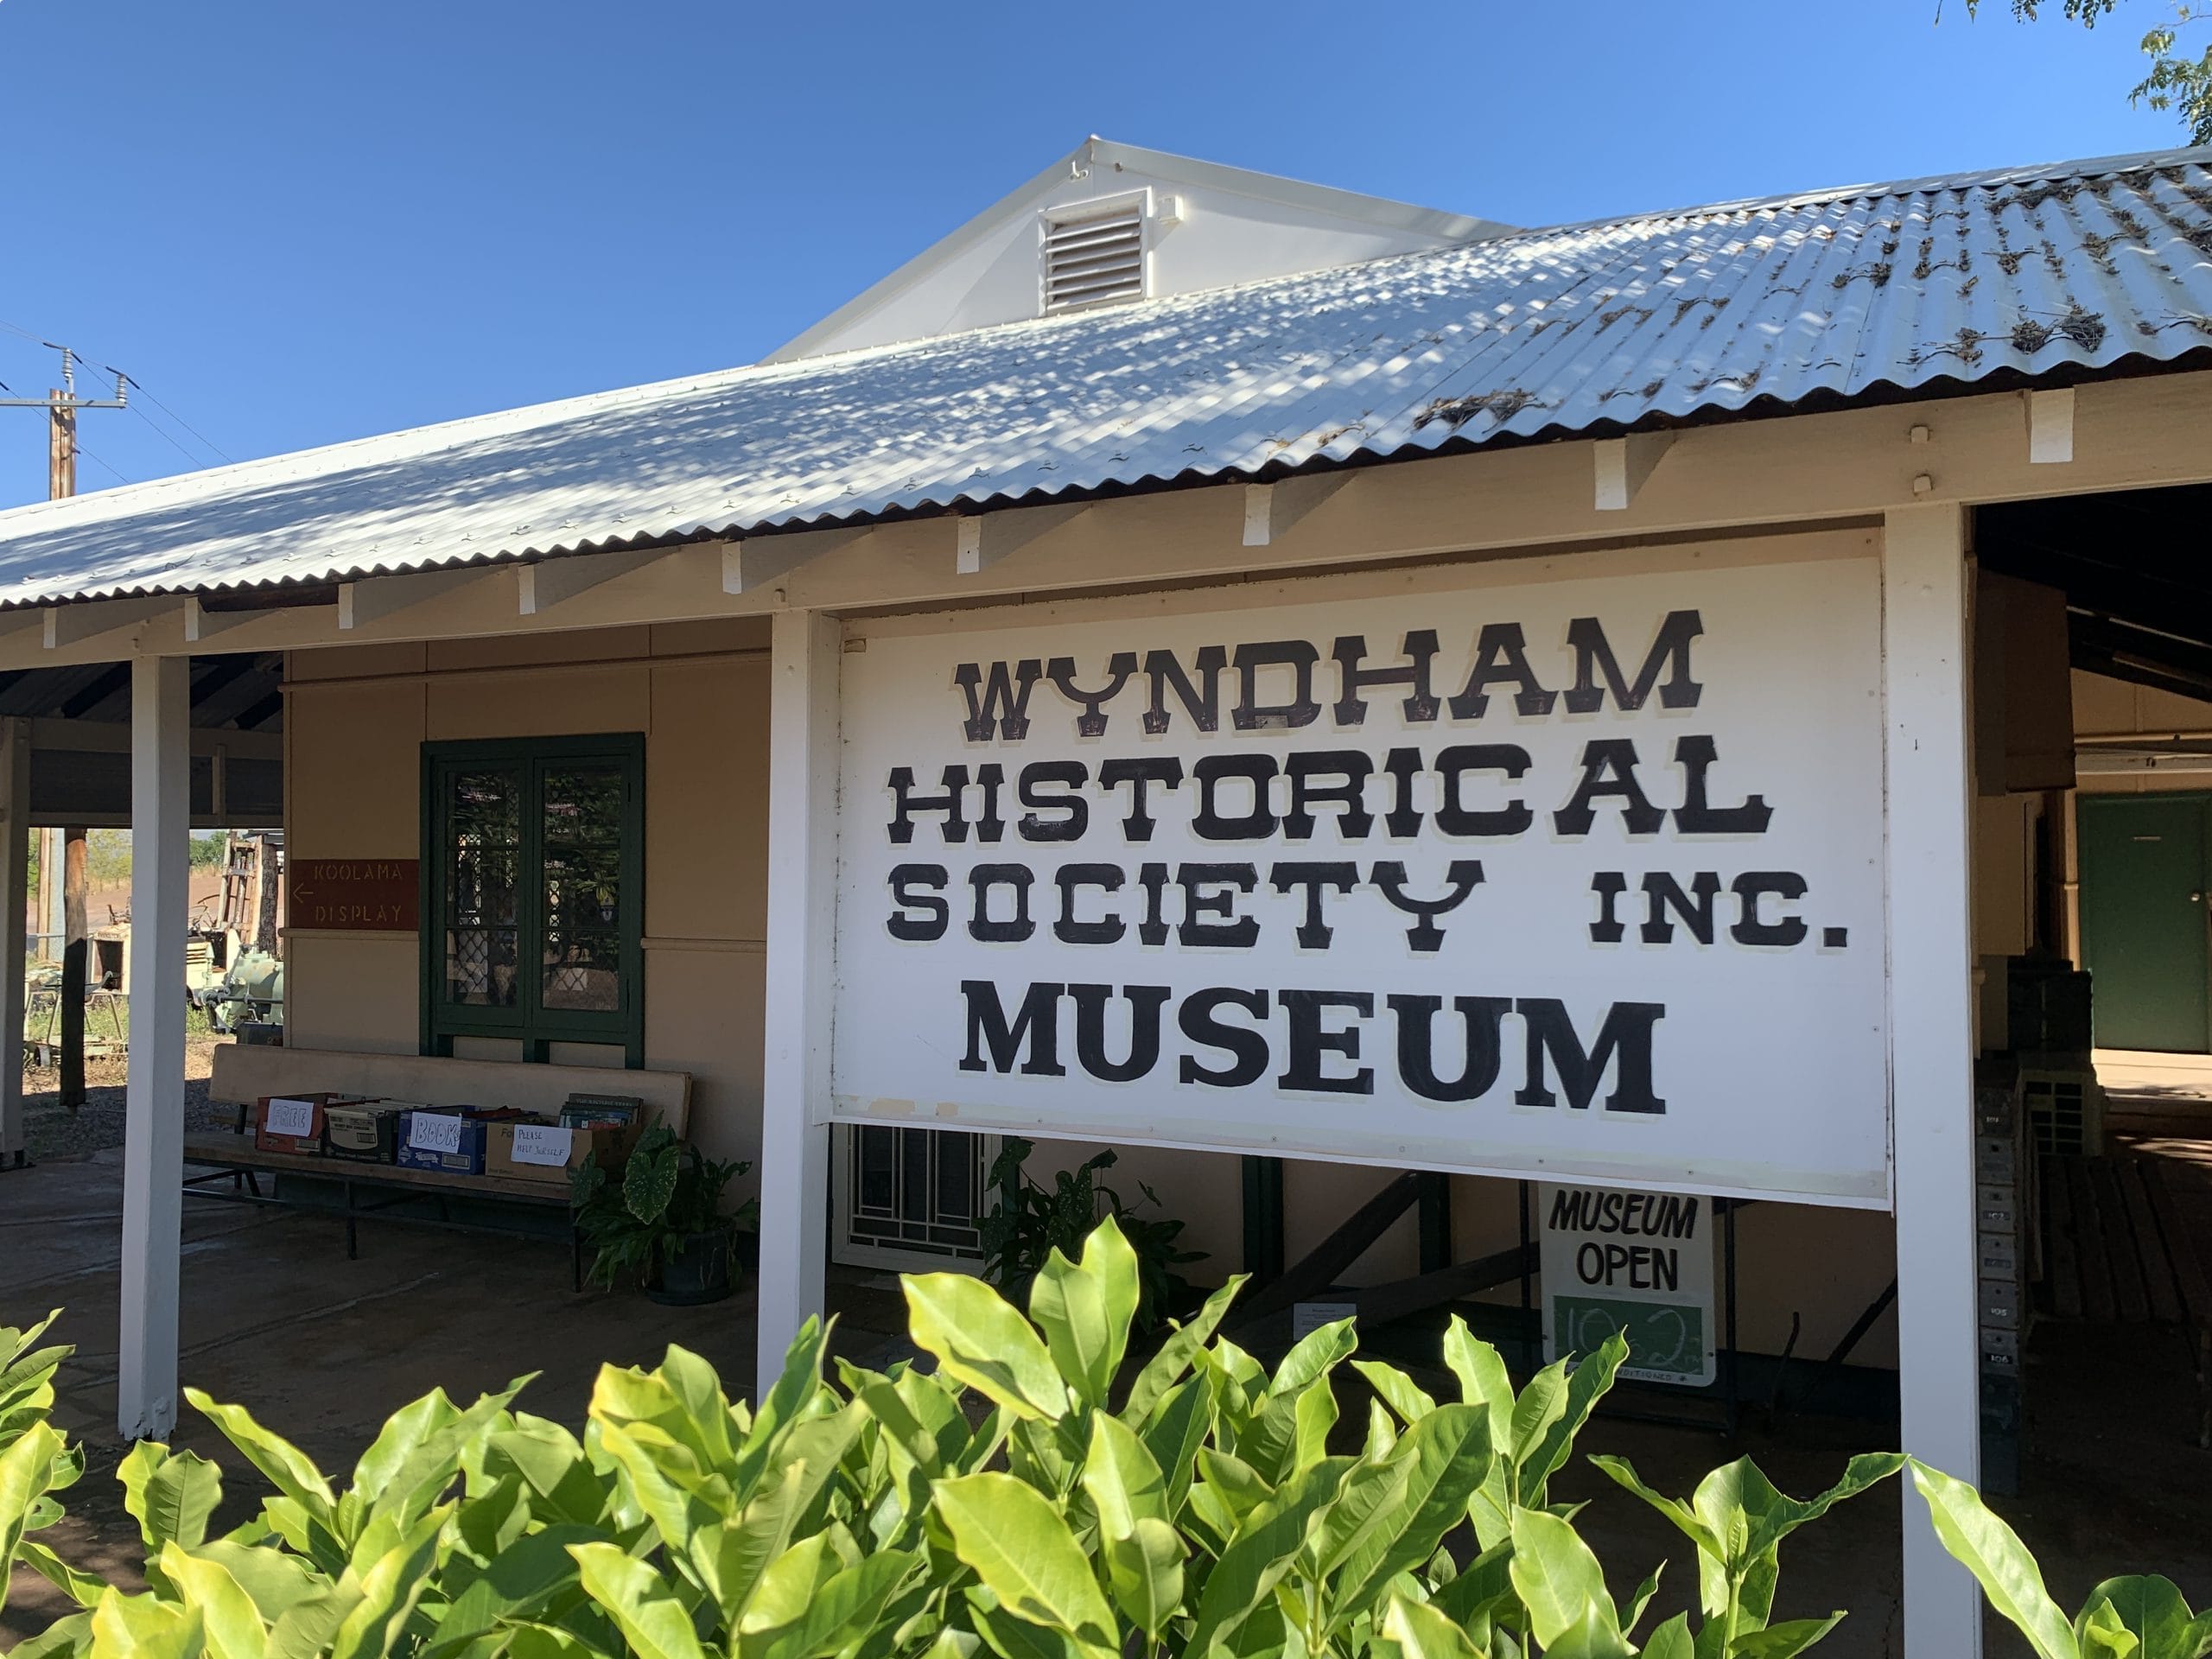 Wyndham Historical society